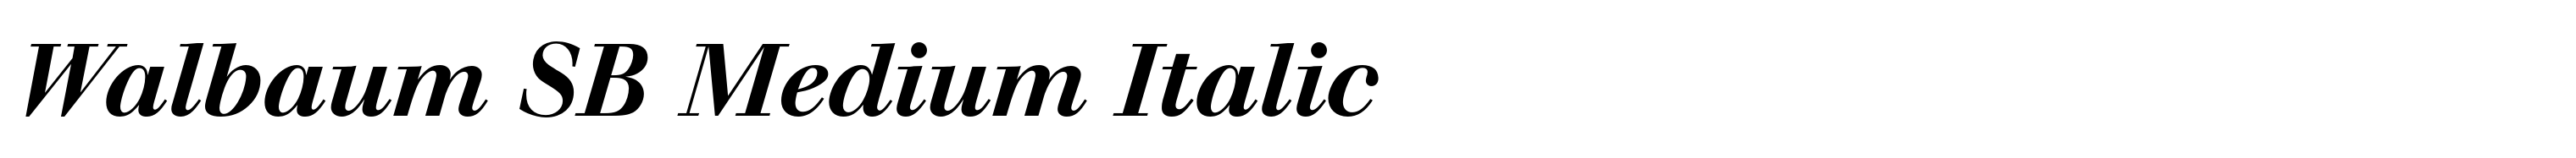 Walbaum SB Medium Italic